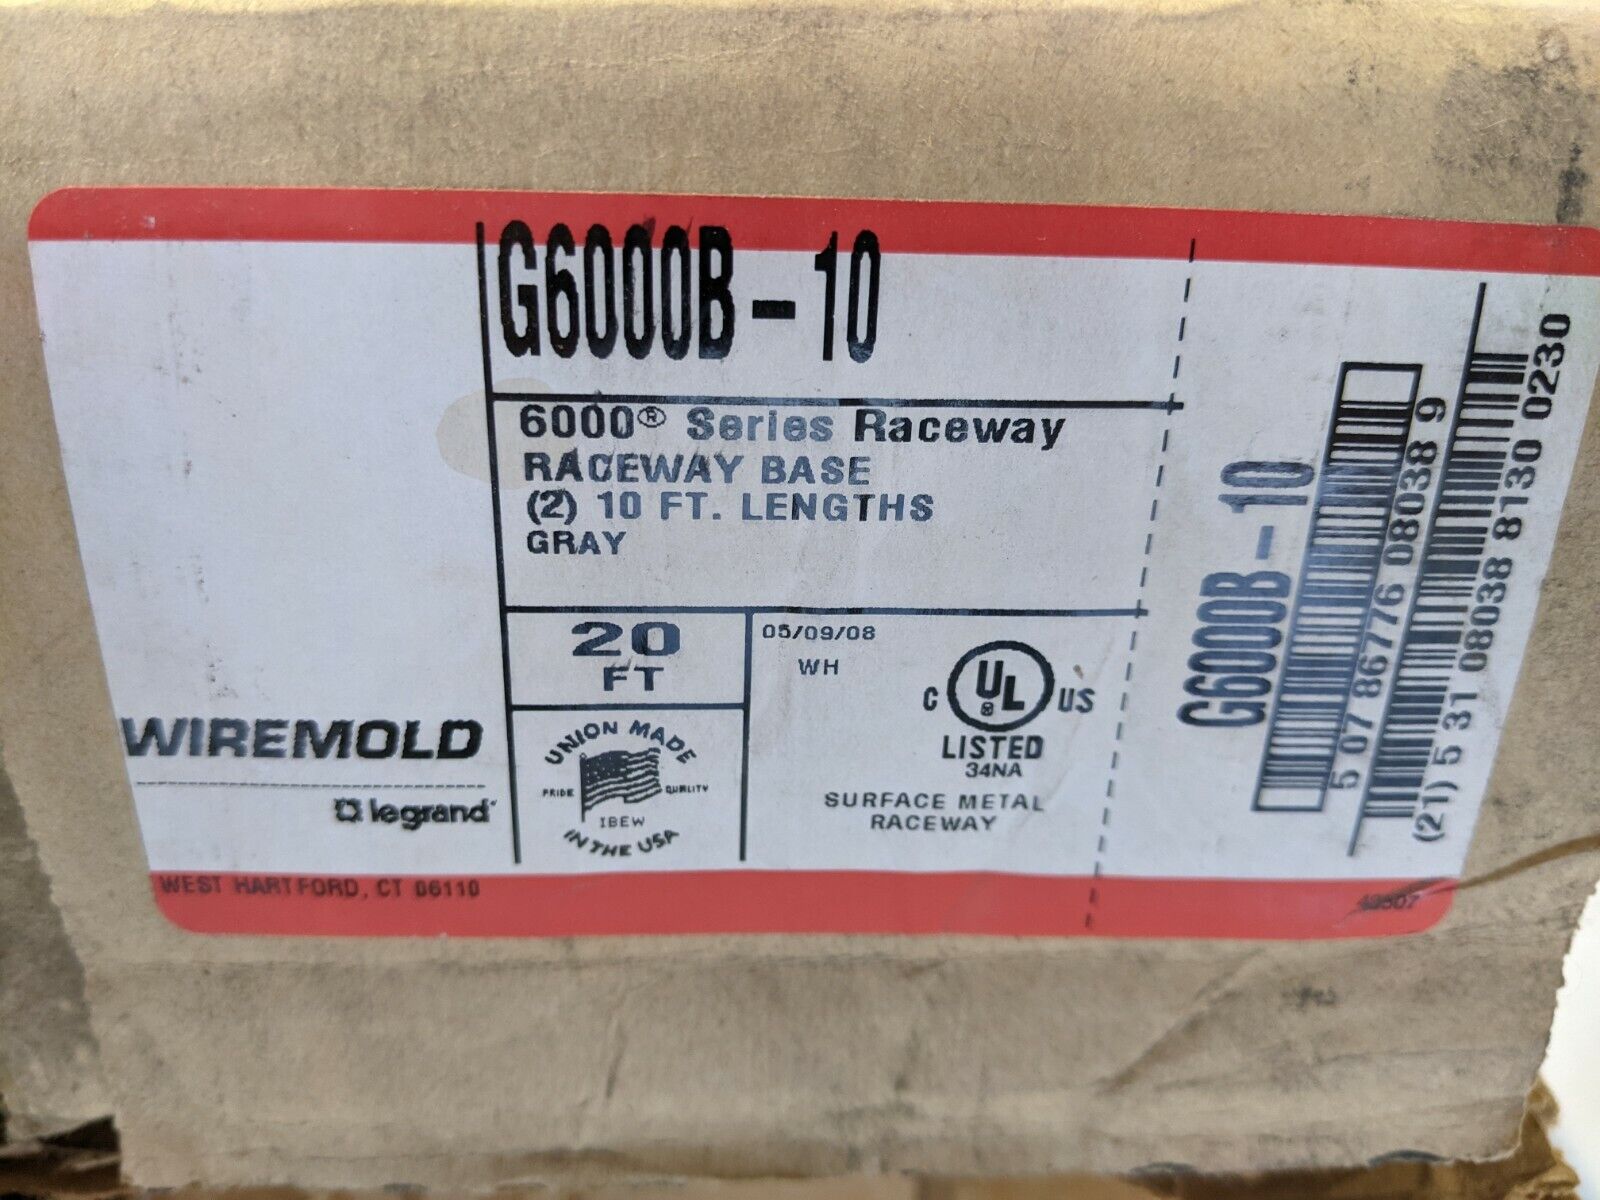 Wiremold G6000B-10 Steel Raceway Base 10ft LOT OF 2